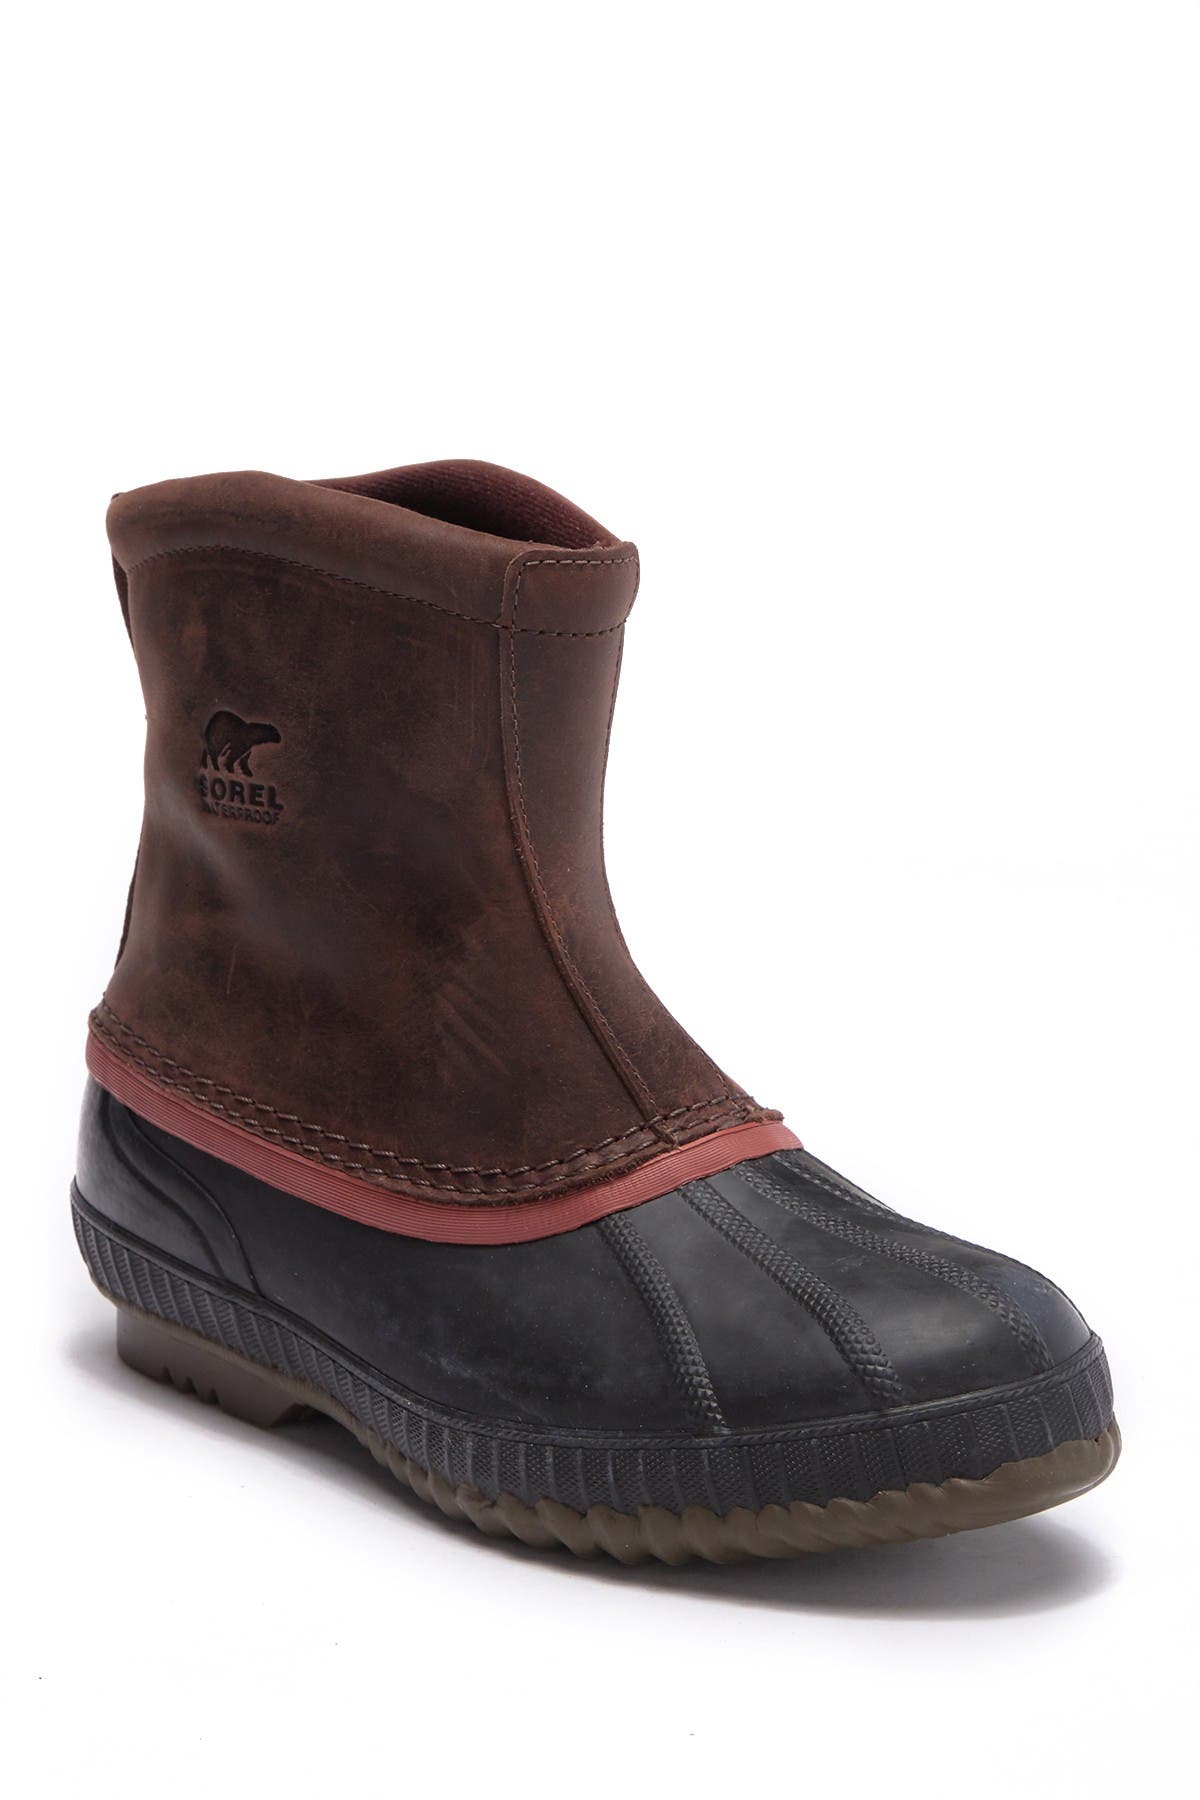 sorel rain boots nordstrom